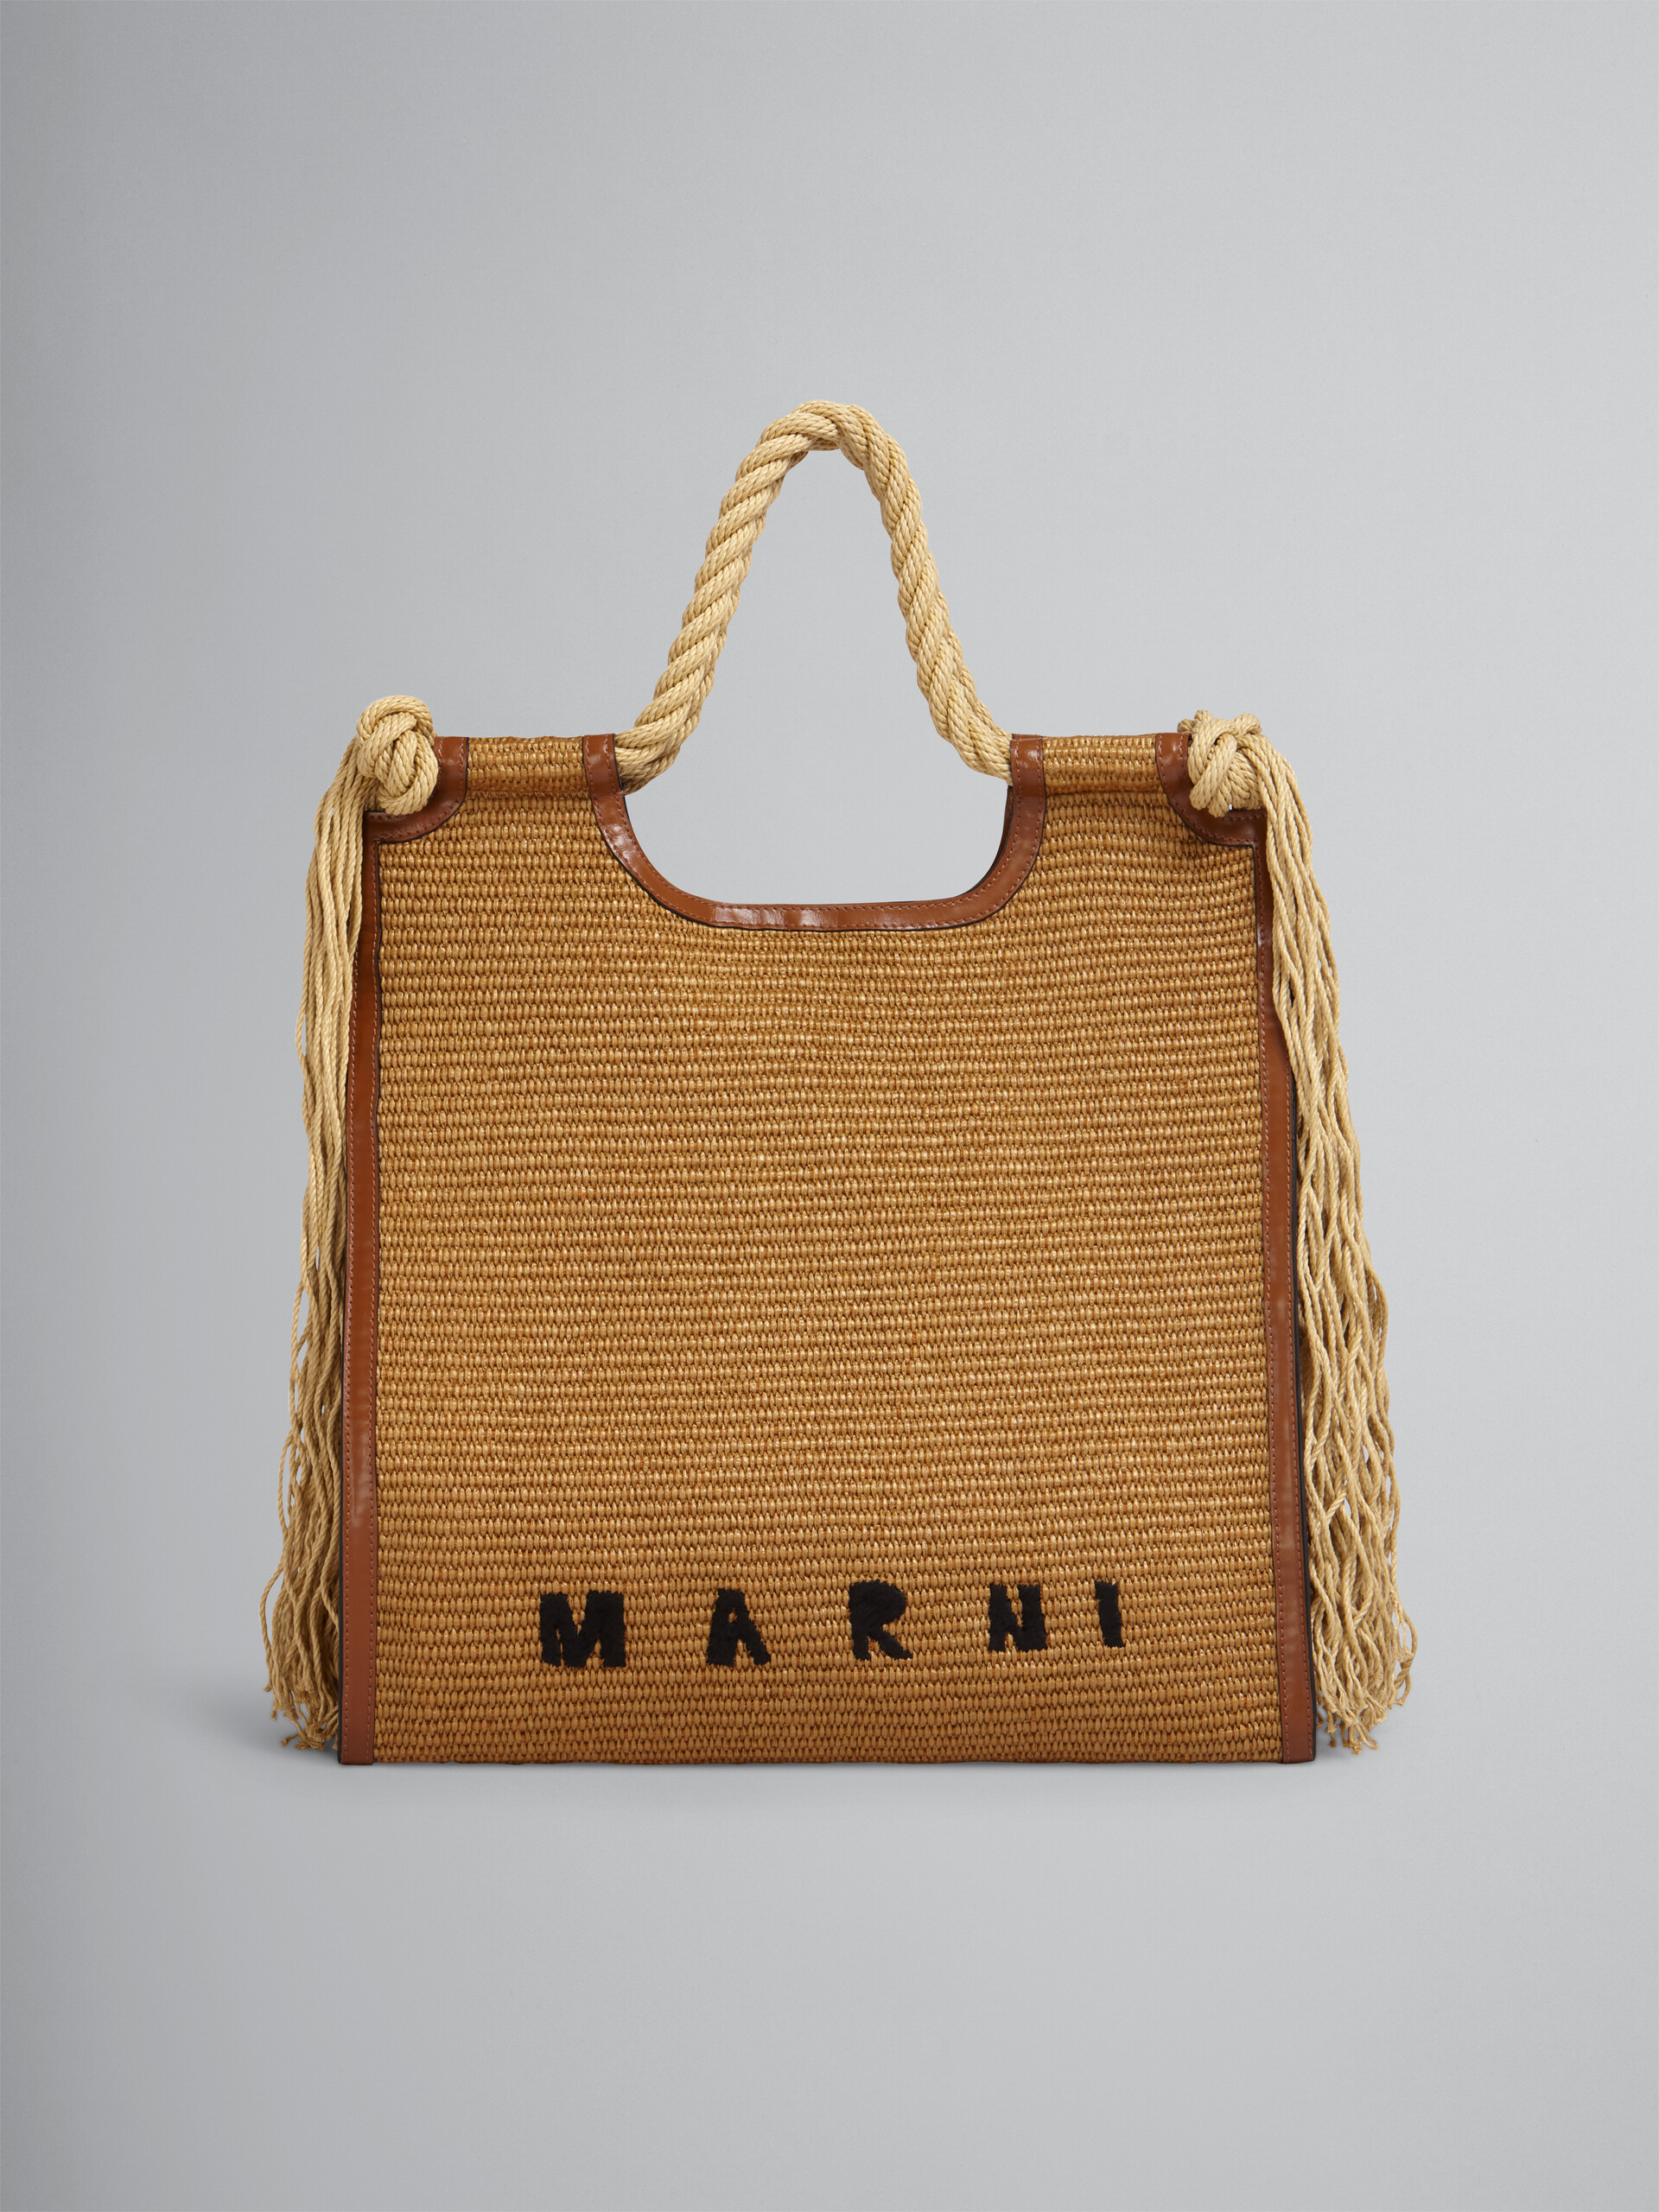 マルニの30代におすすめのバッグはバーチカルショッピングバッグです